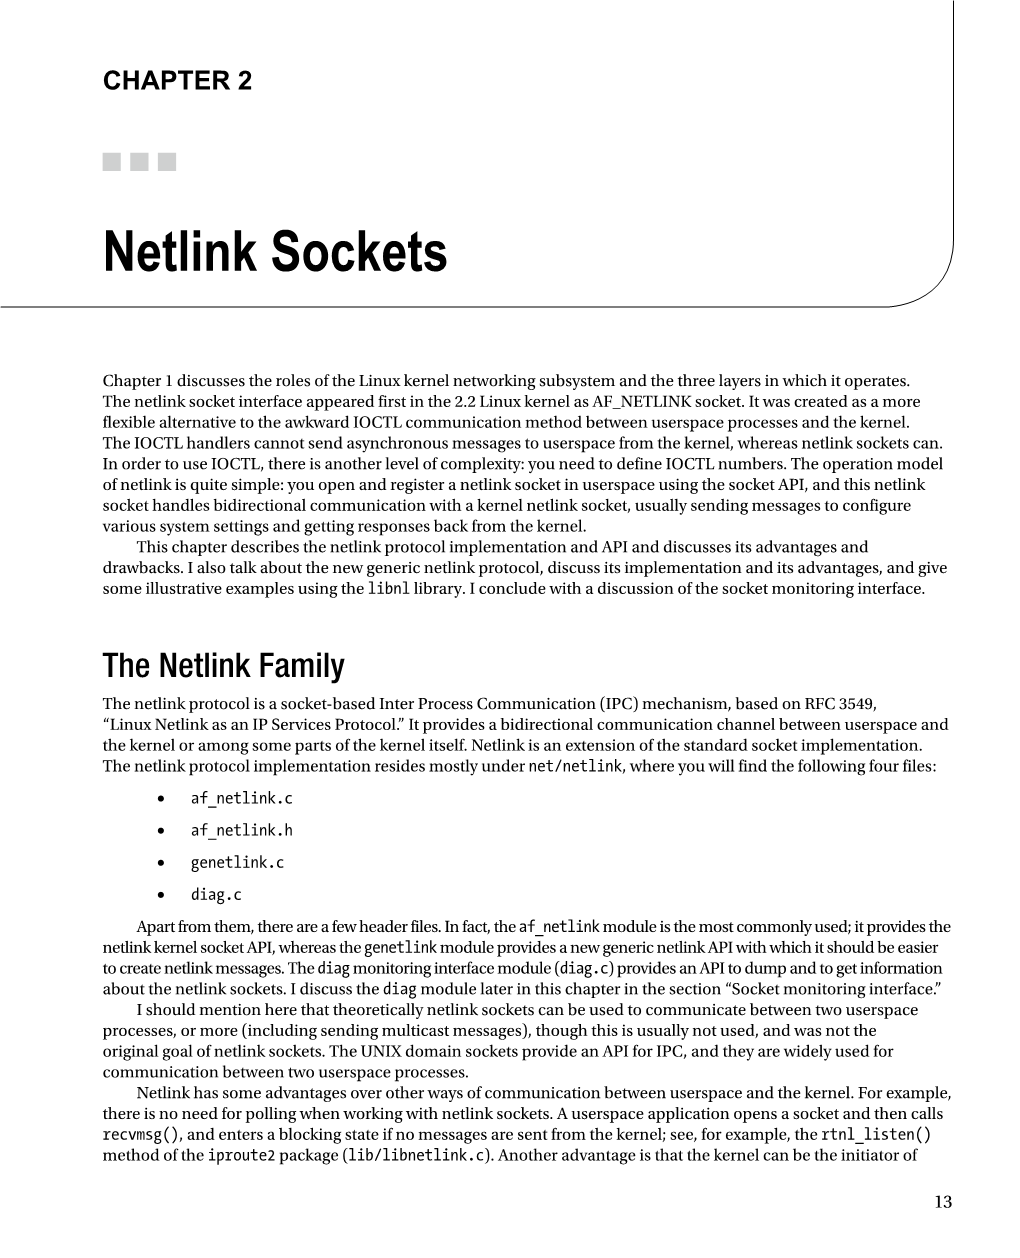 Netlink Sockets